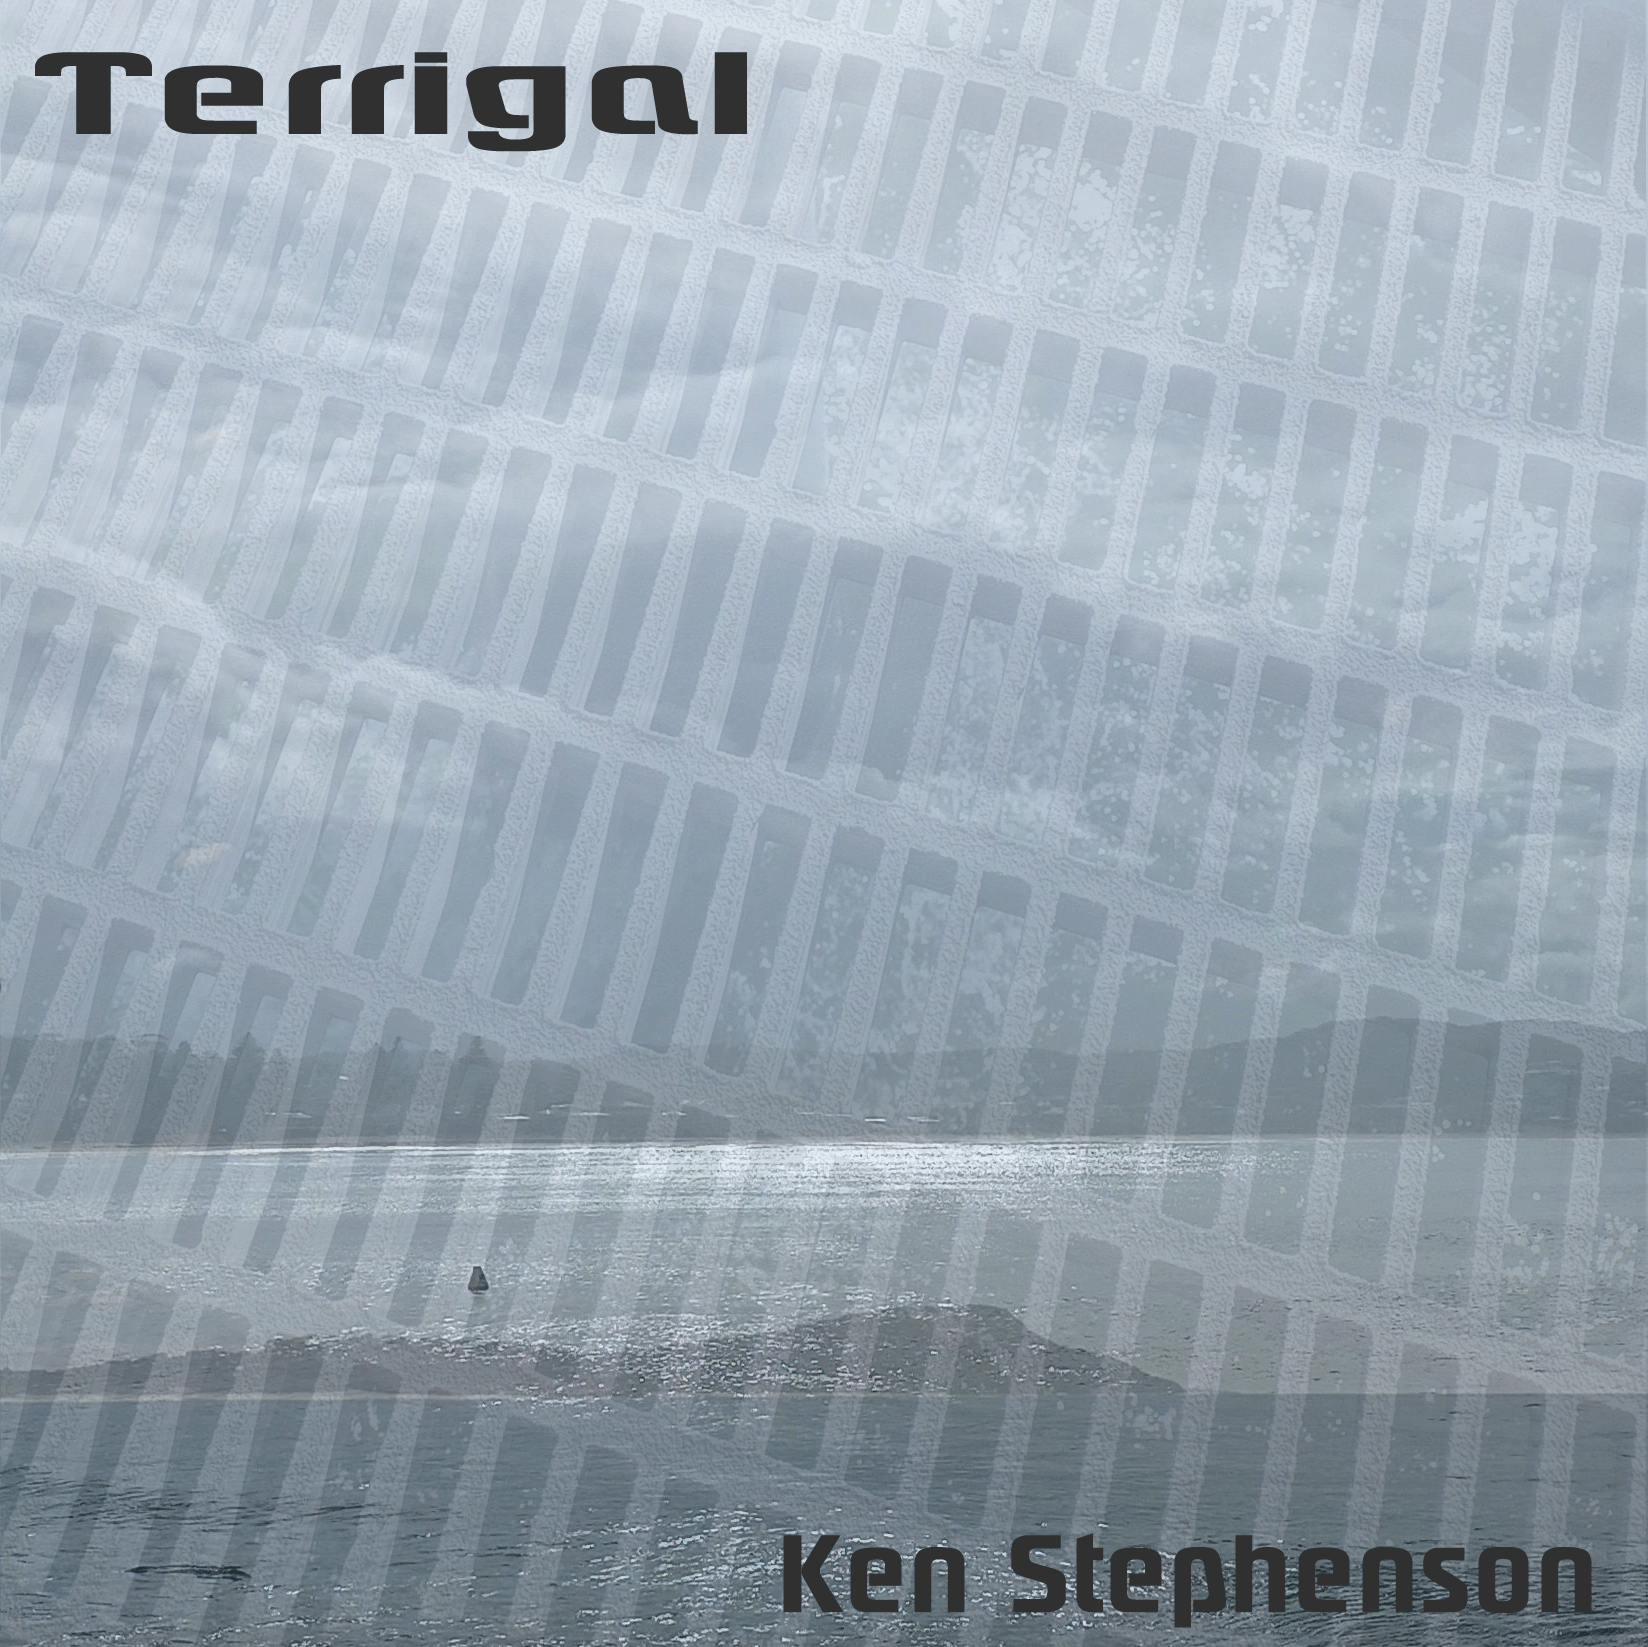 Terrigal - Ken Stephenson